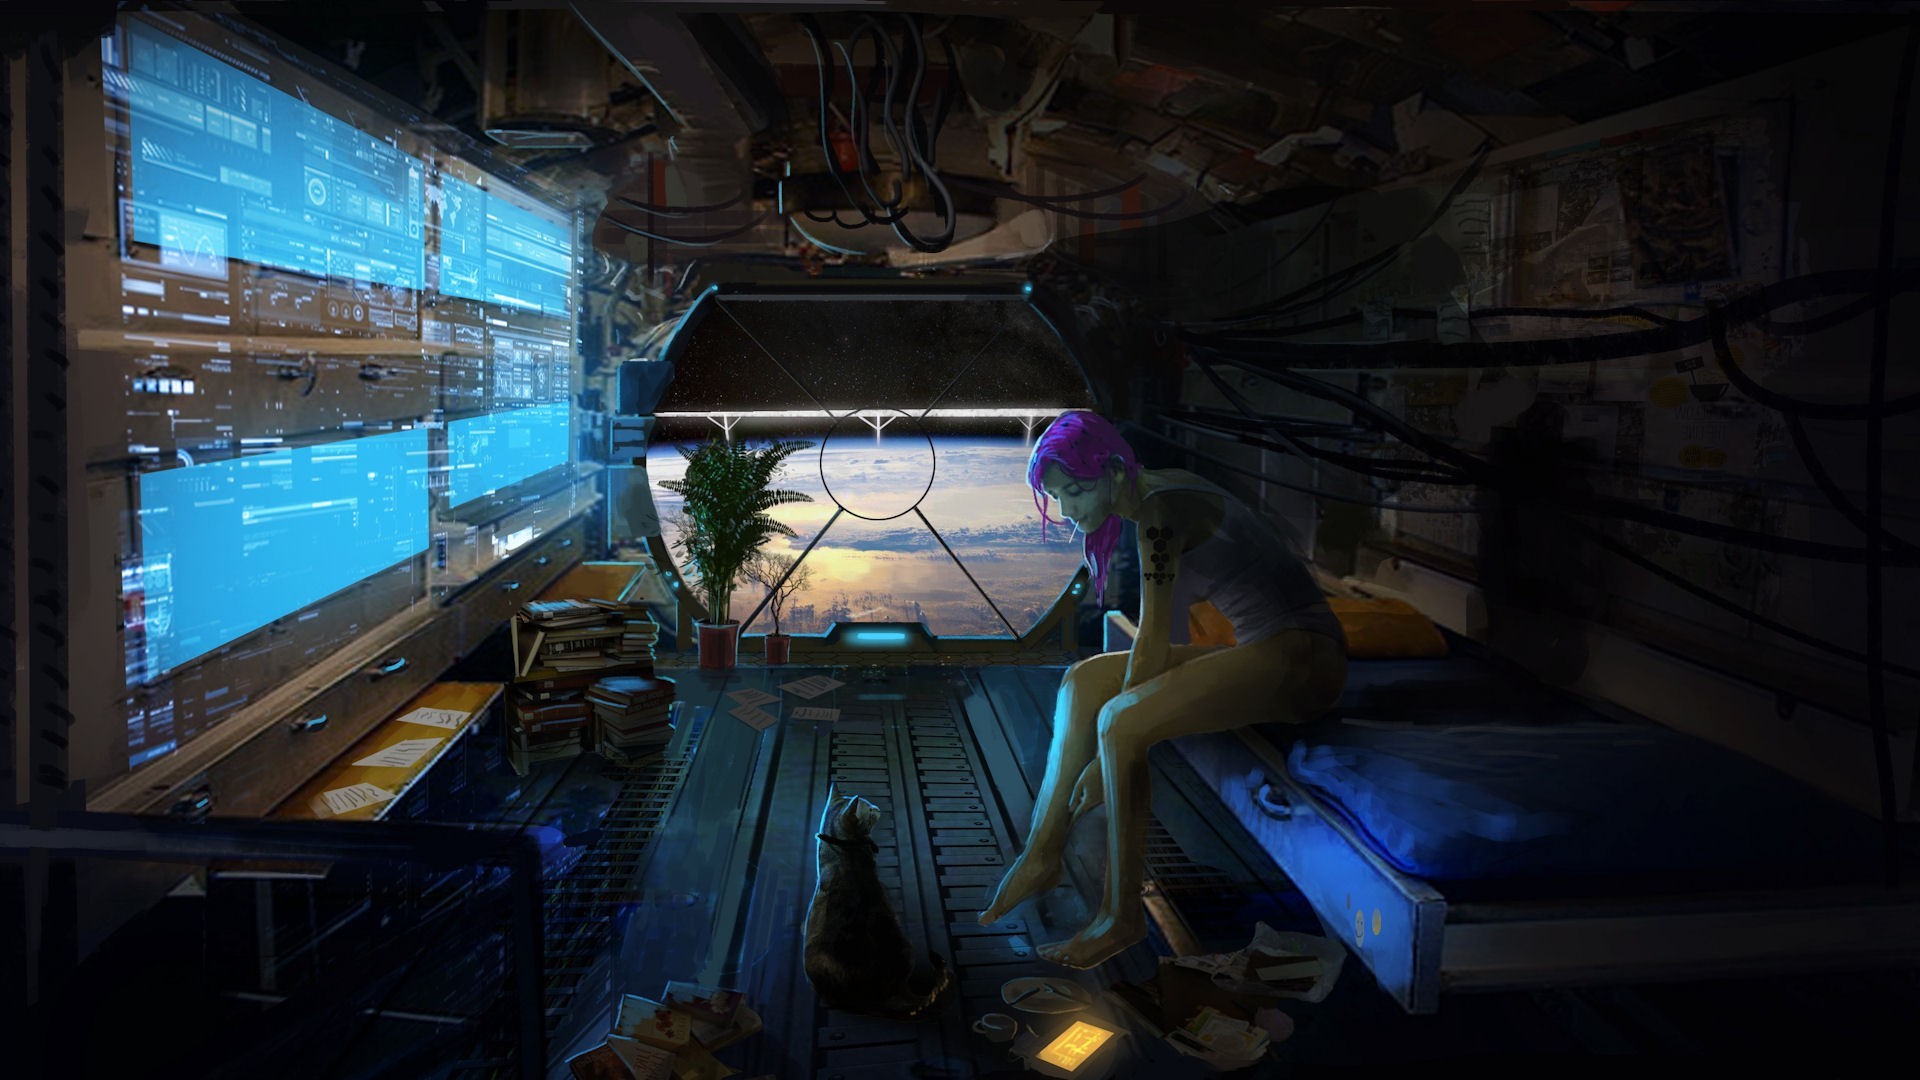 purple anime landscape